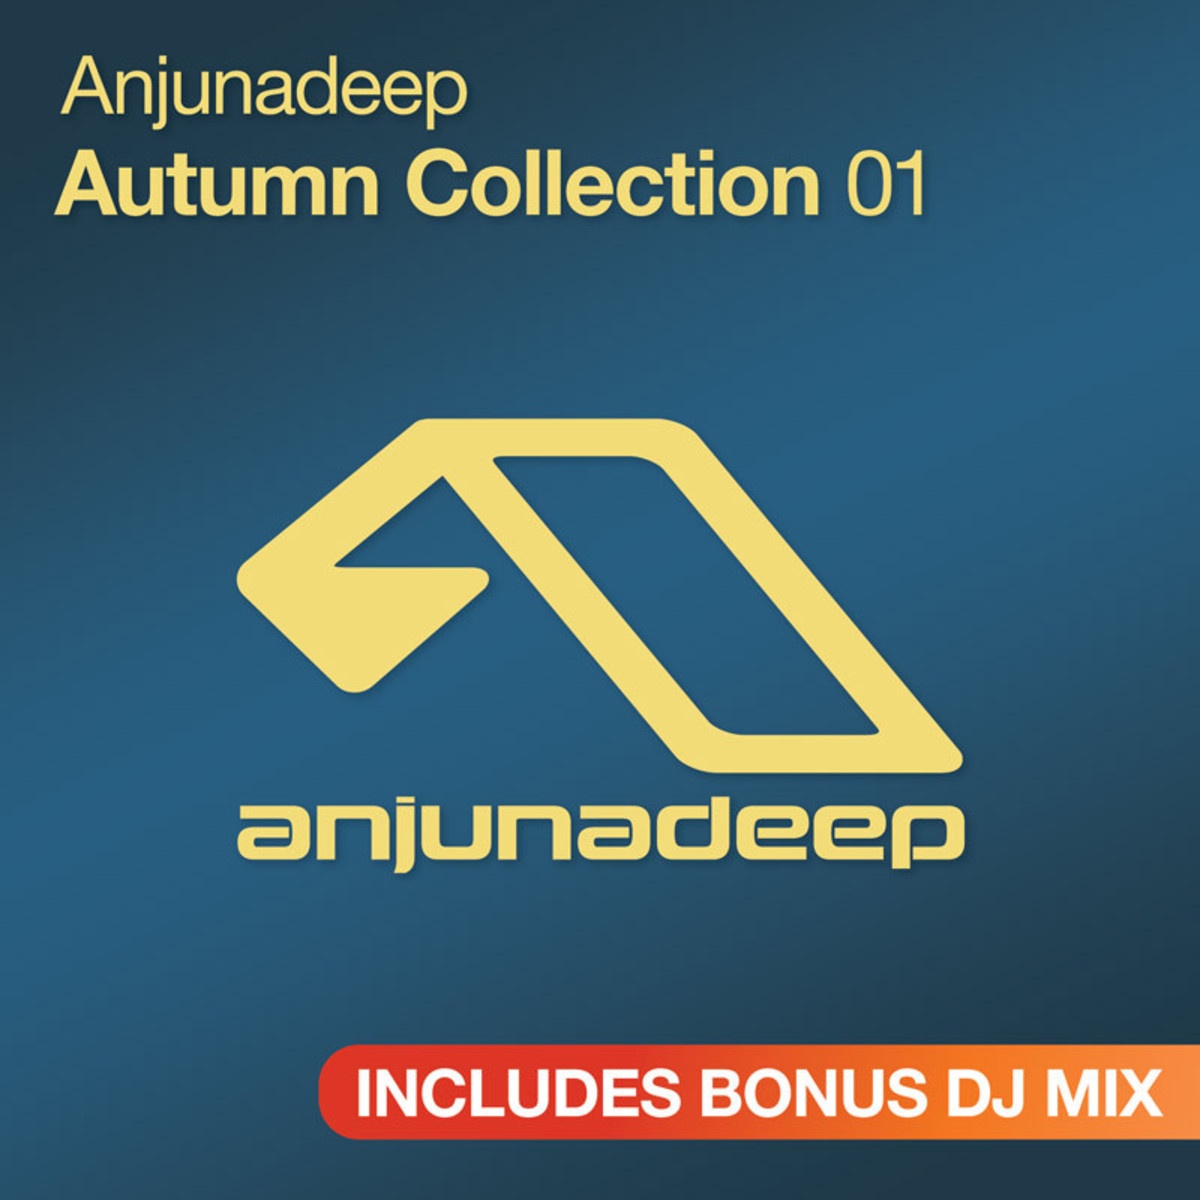 Anjunadeep Autumn Collection 01 - Bonus DJ Mix